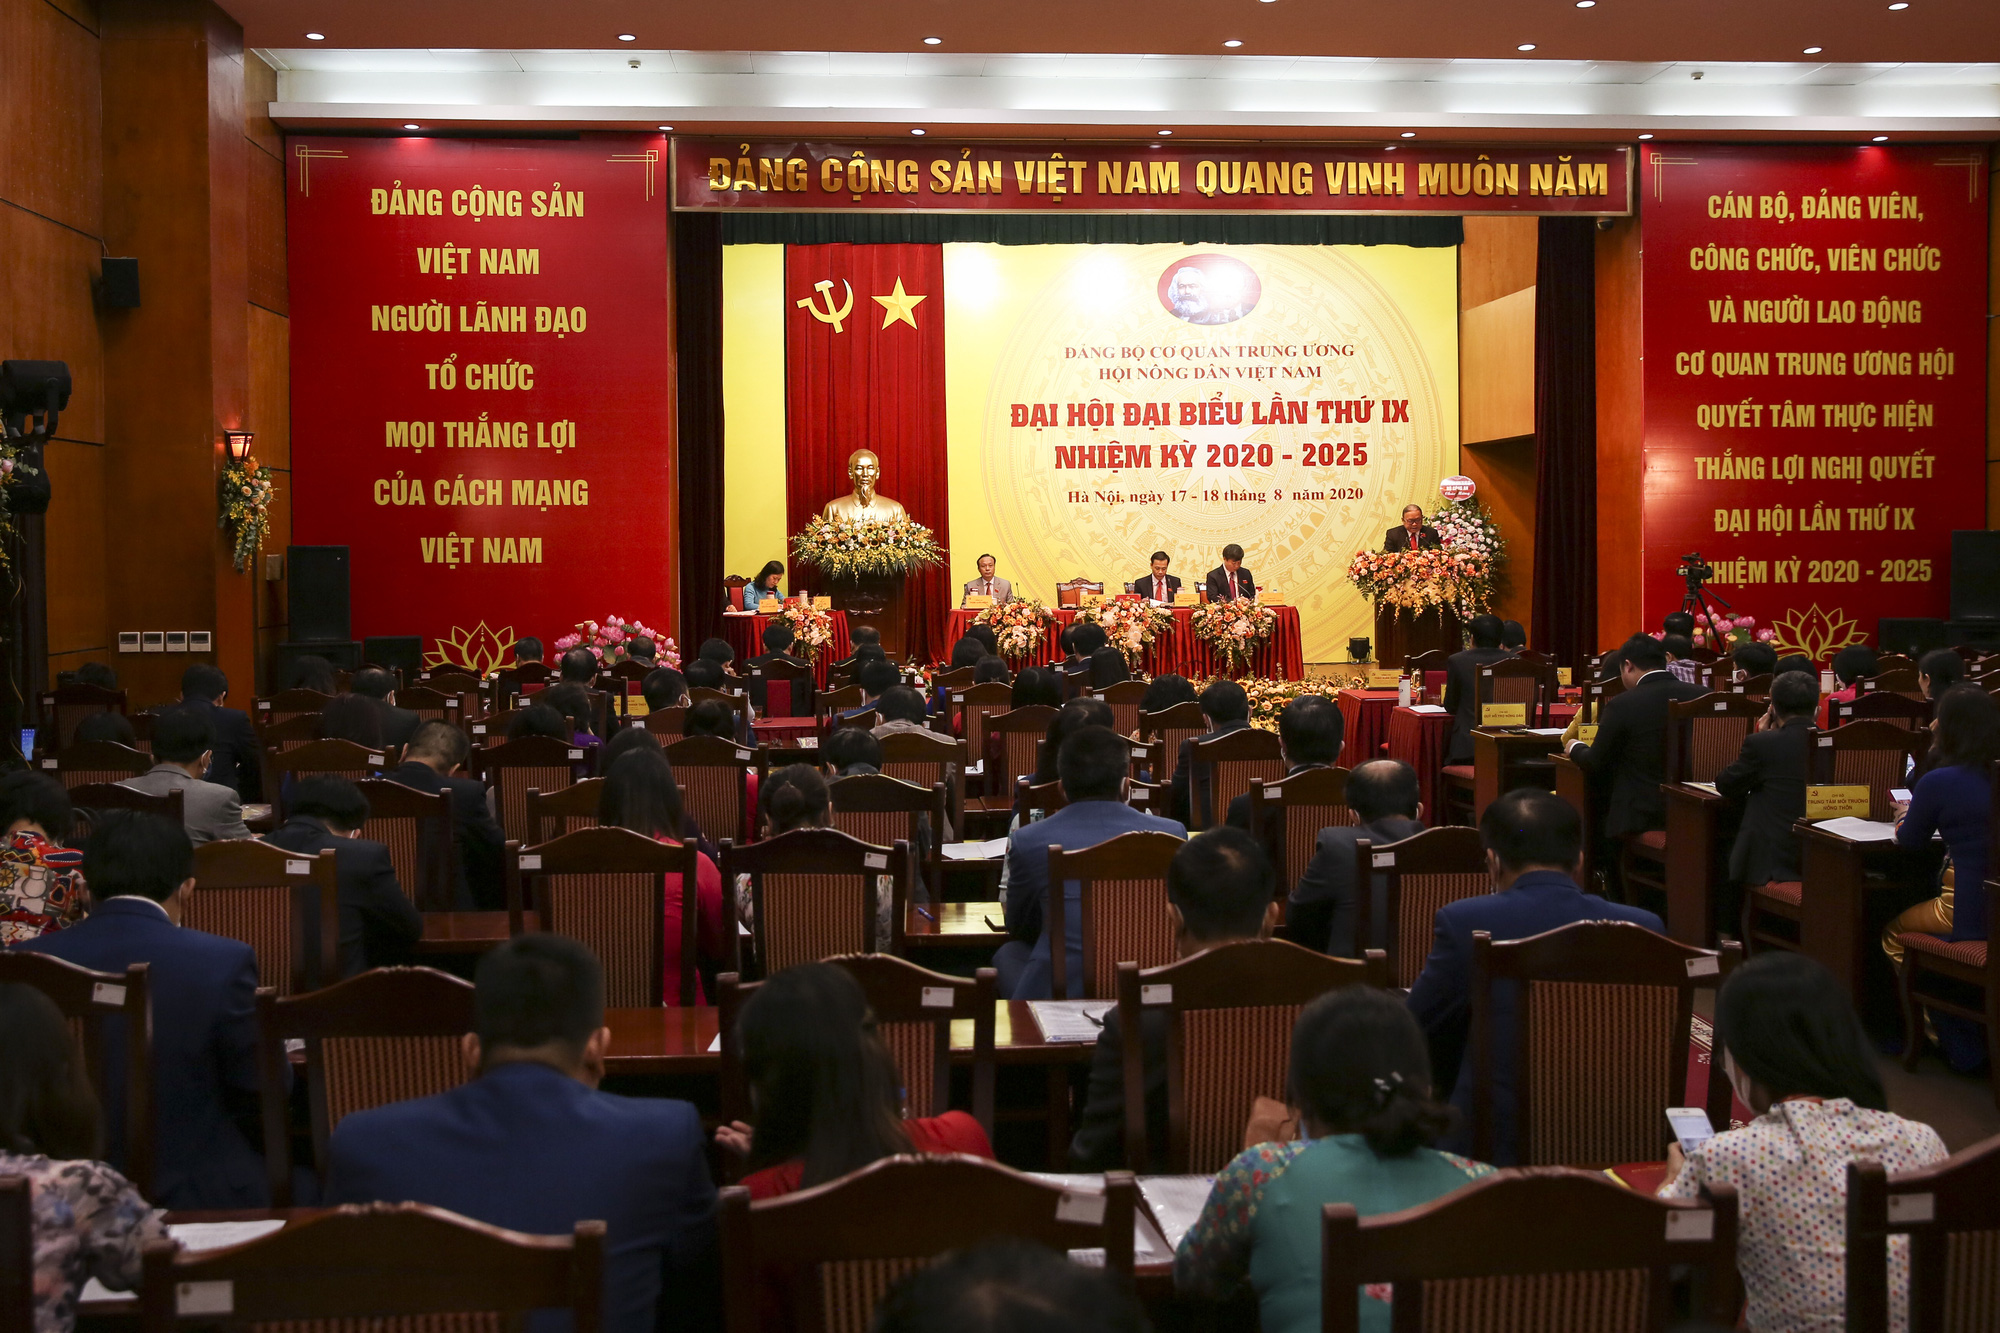 Khai mạc Đại hội đại biểu Đảng bộ Cơ quan Trung ương Hội Nông dân Việt Nam lần thứ IX - nhiệm kỳ 2020-2025 - Ảnh 3.